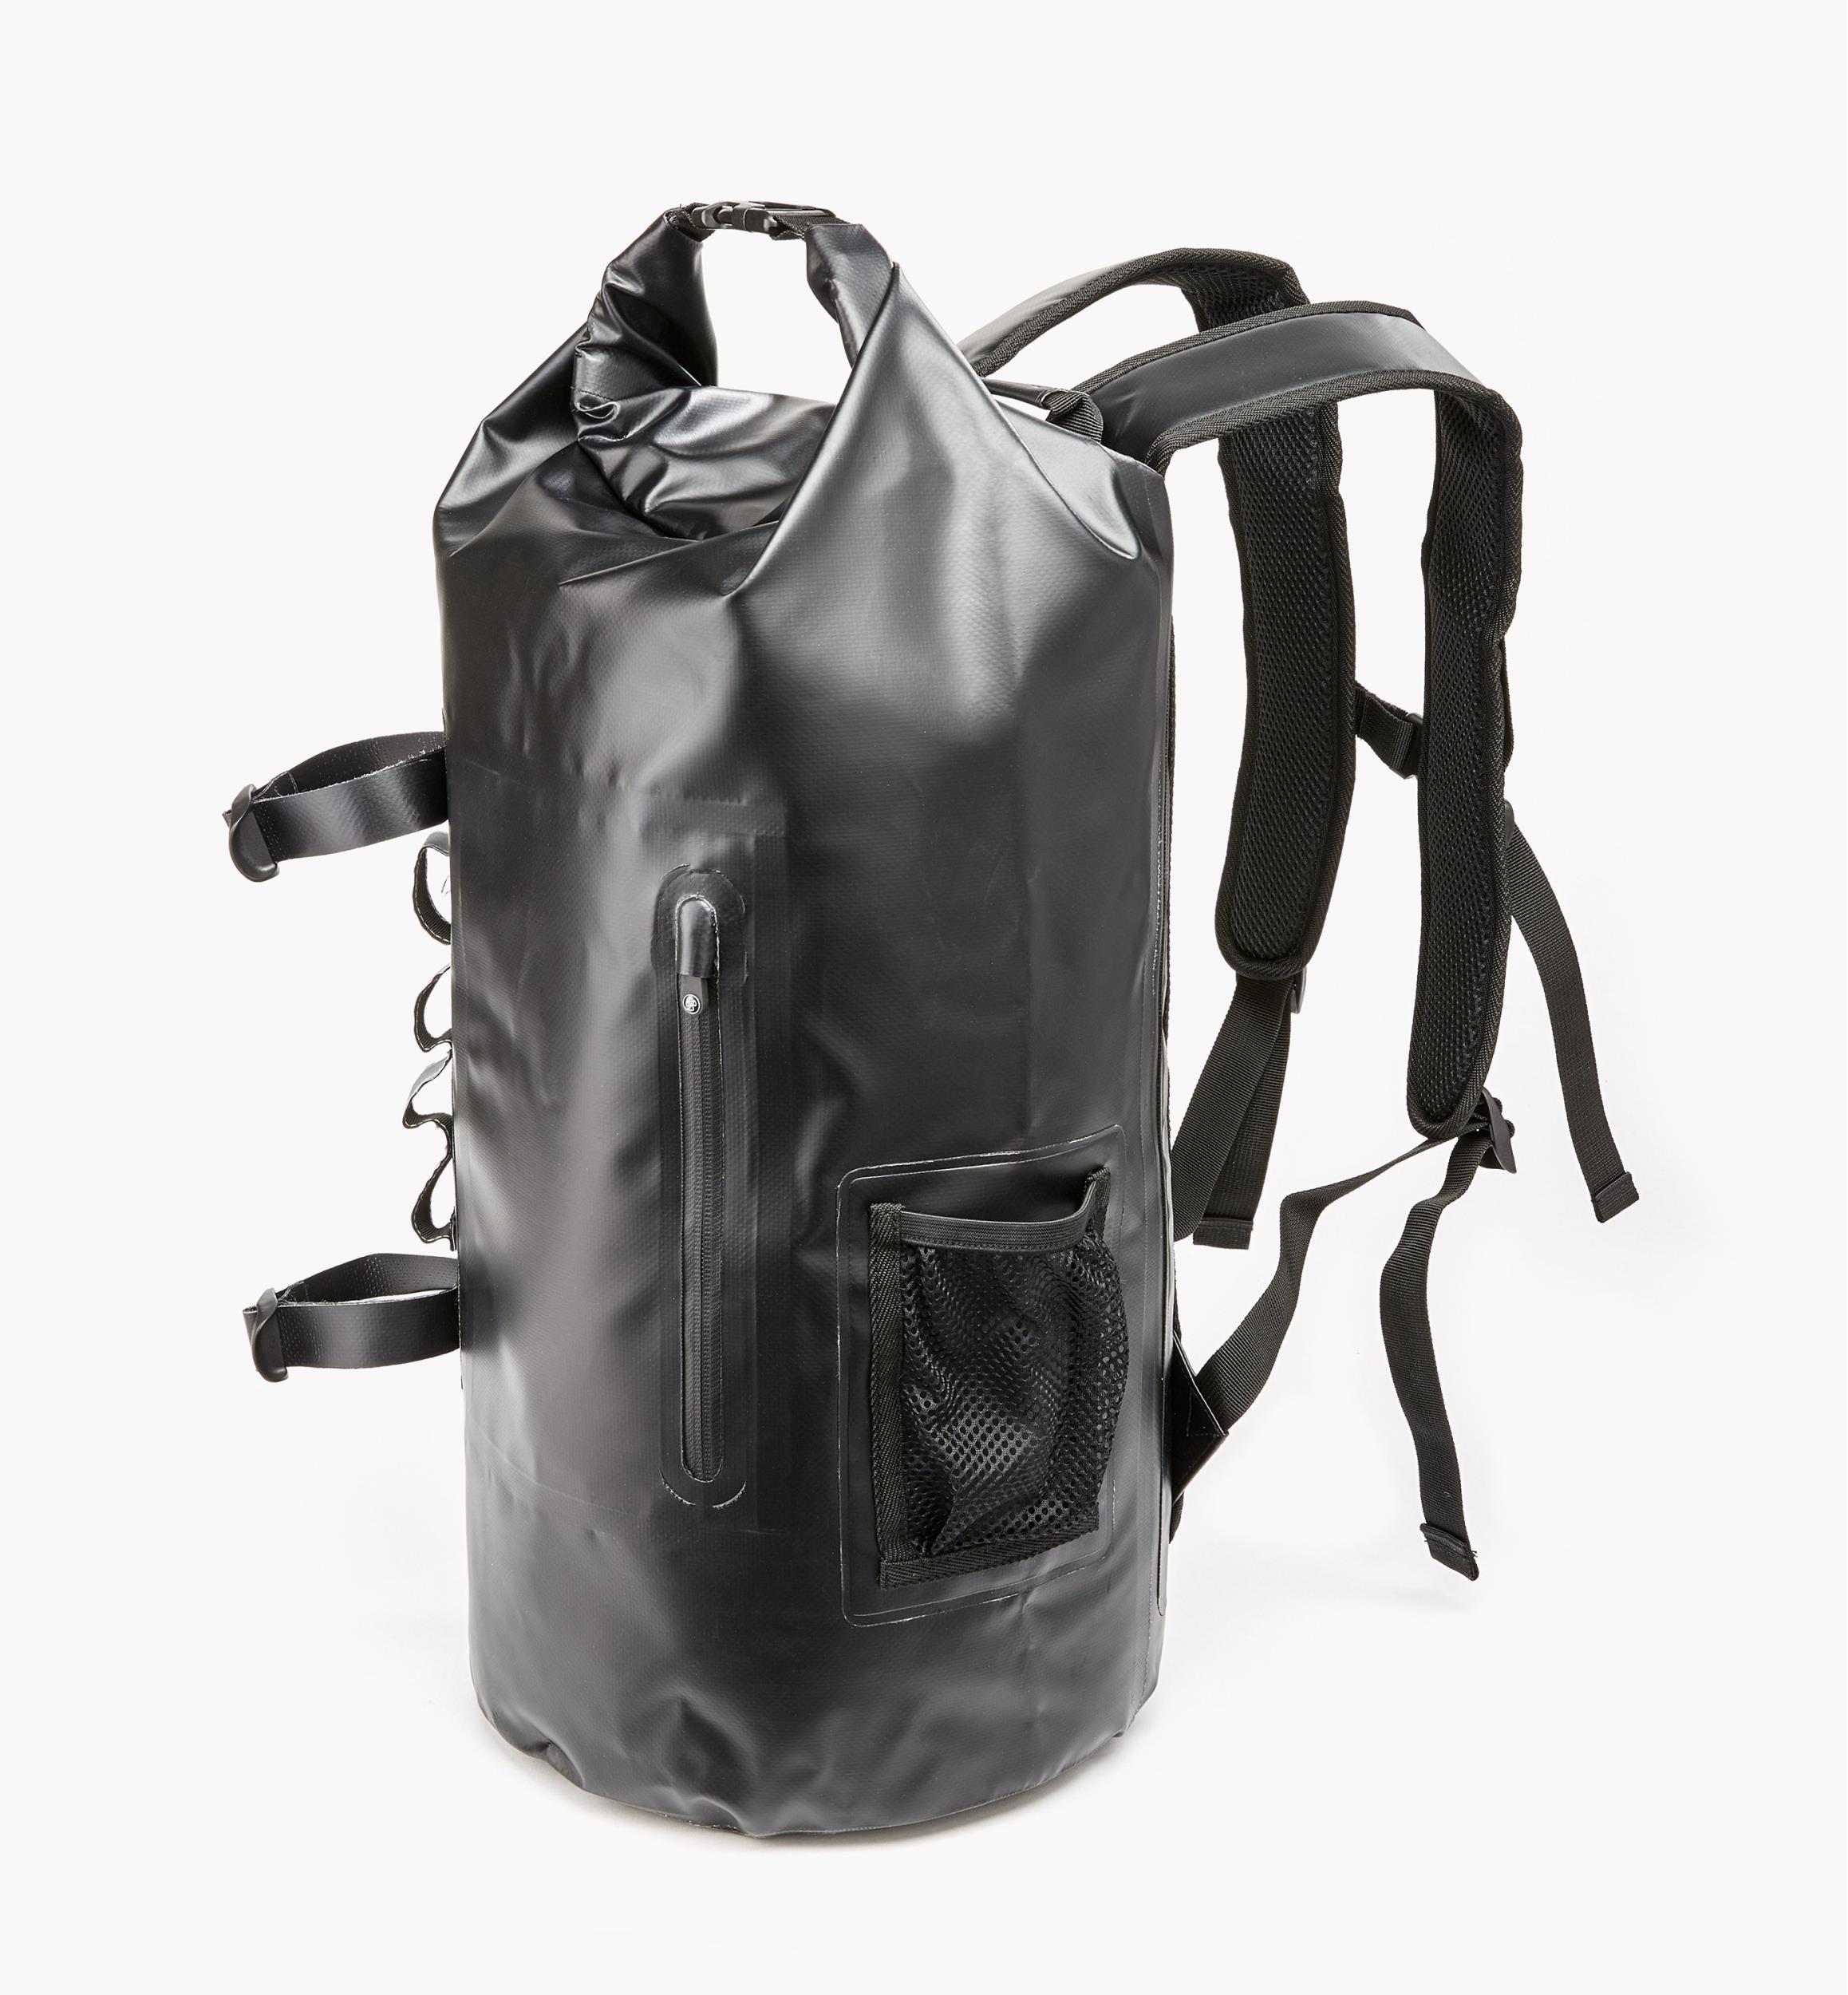 Waterproof Dry Bag Backpack - Lee Valley Tools